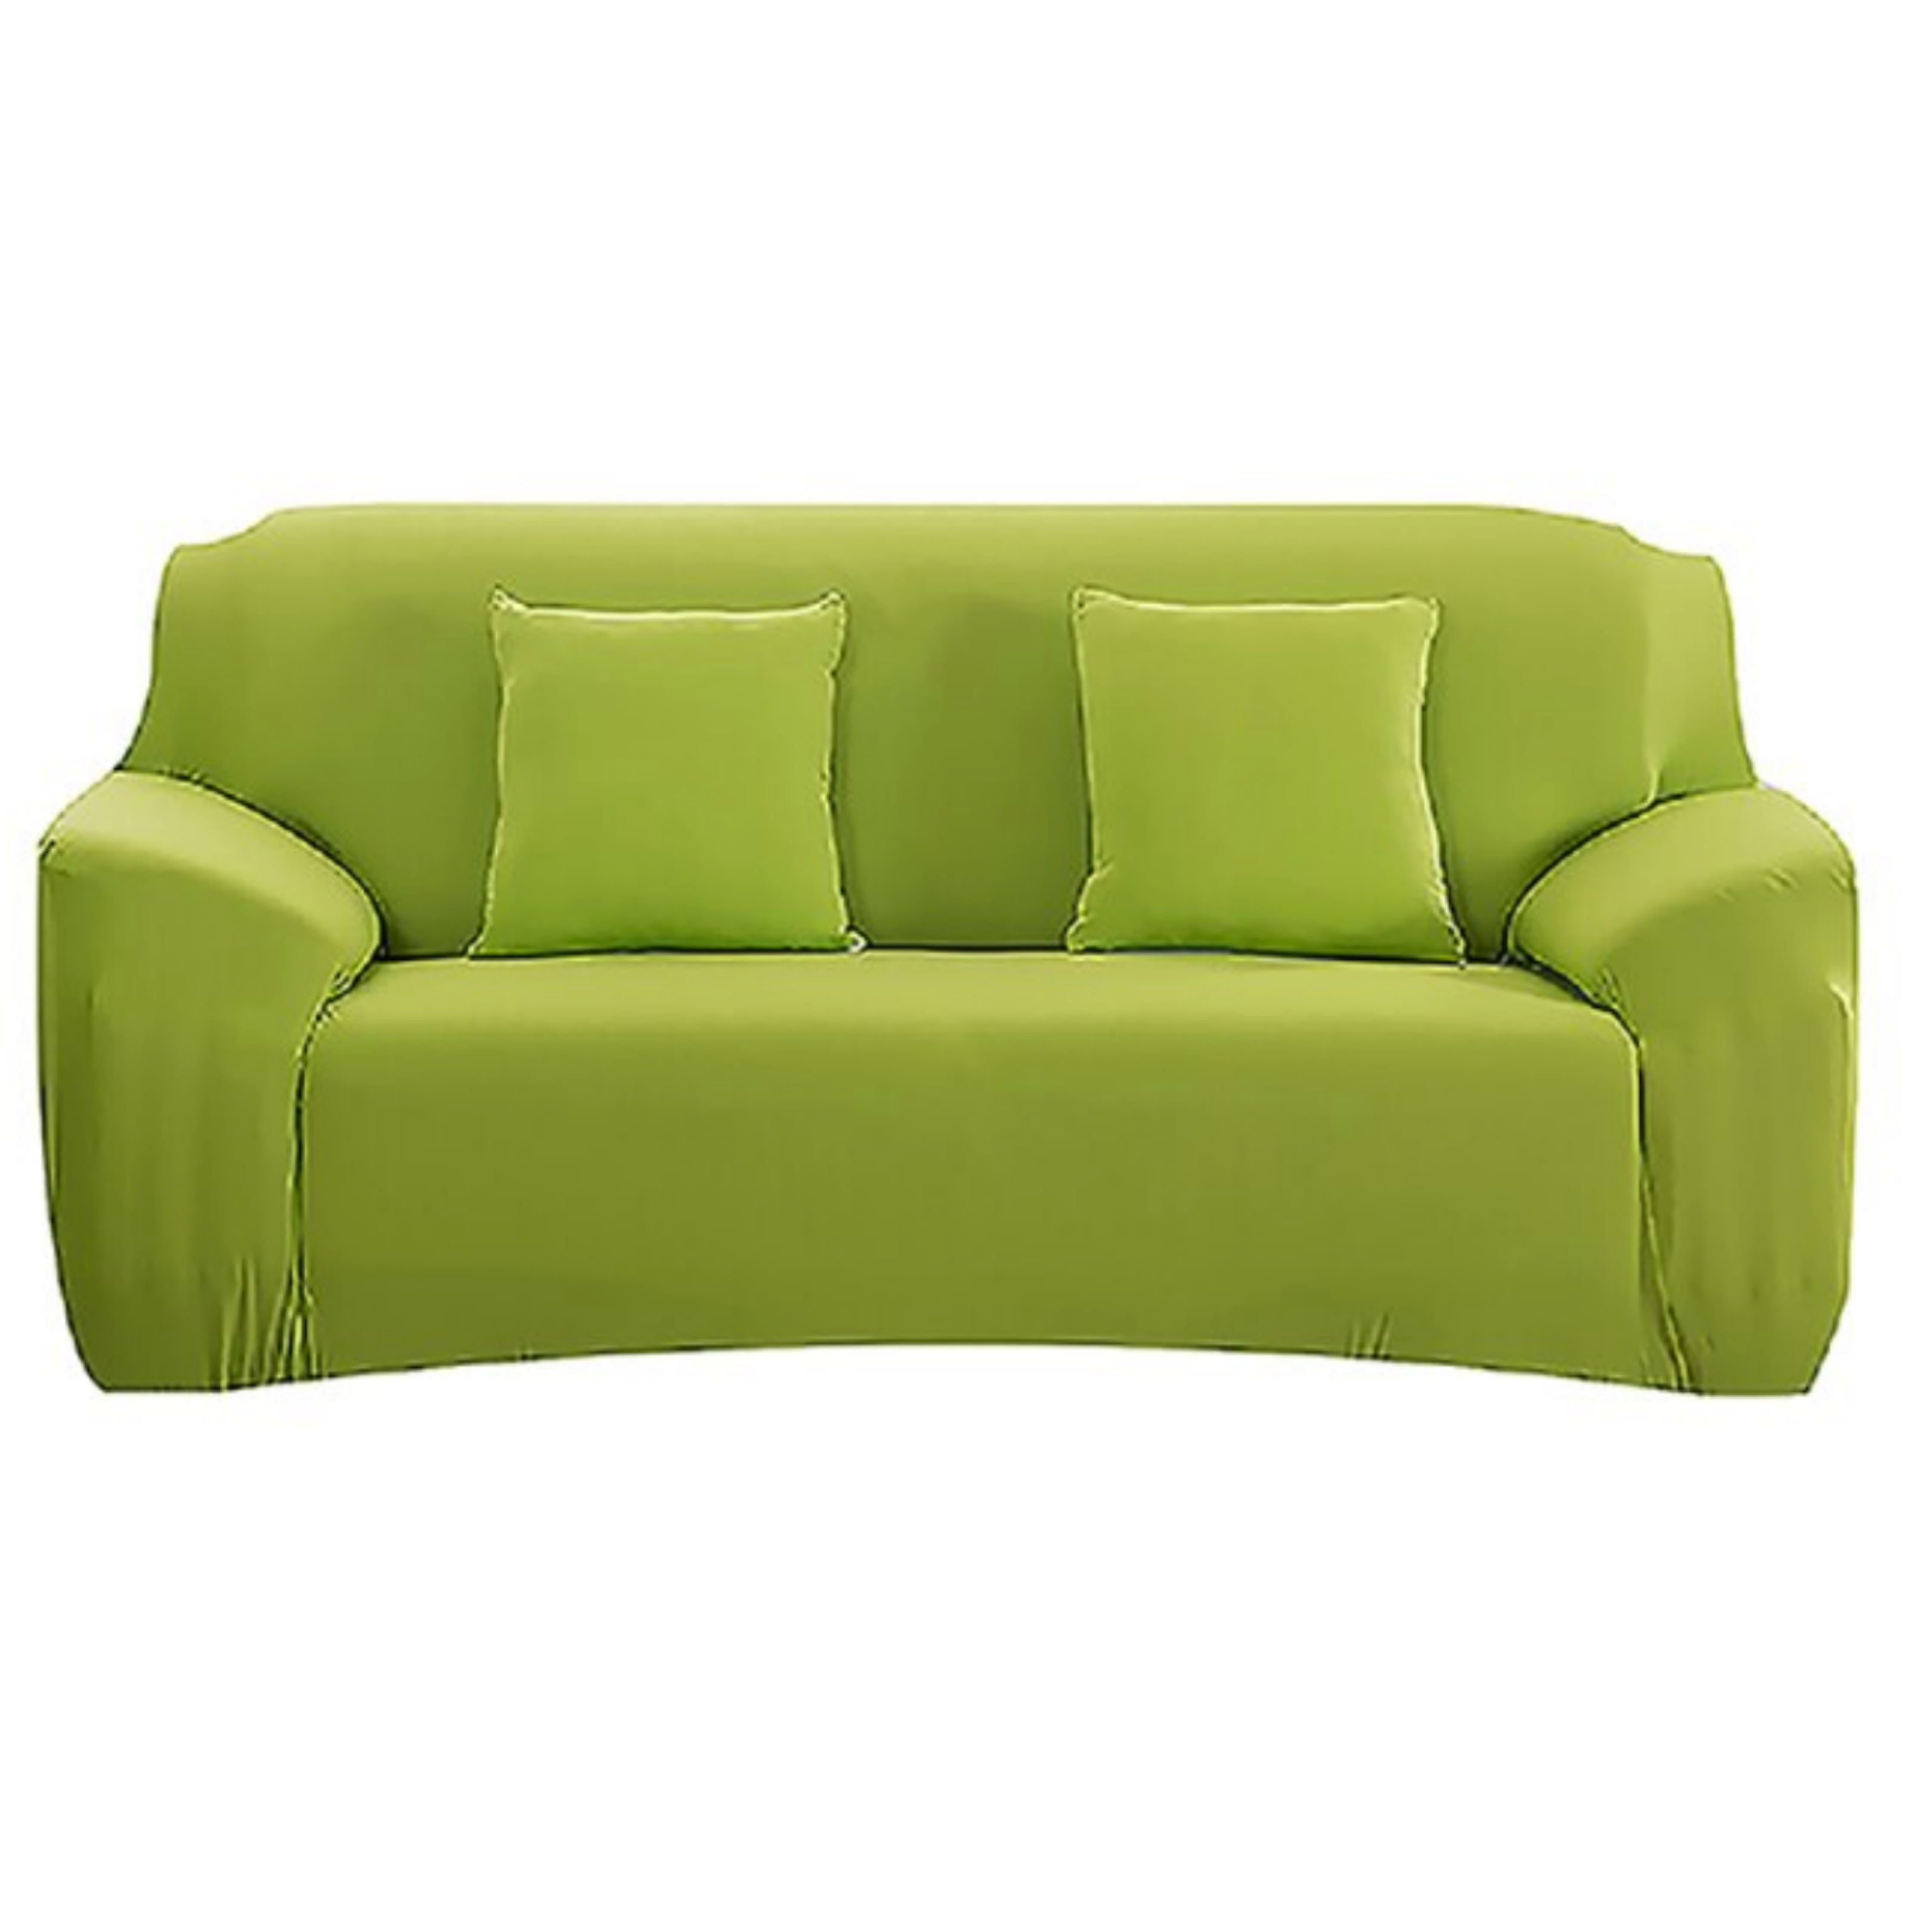 Sofa Cover ™ Elastic Sofa Cover